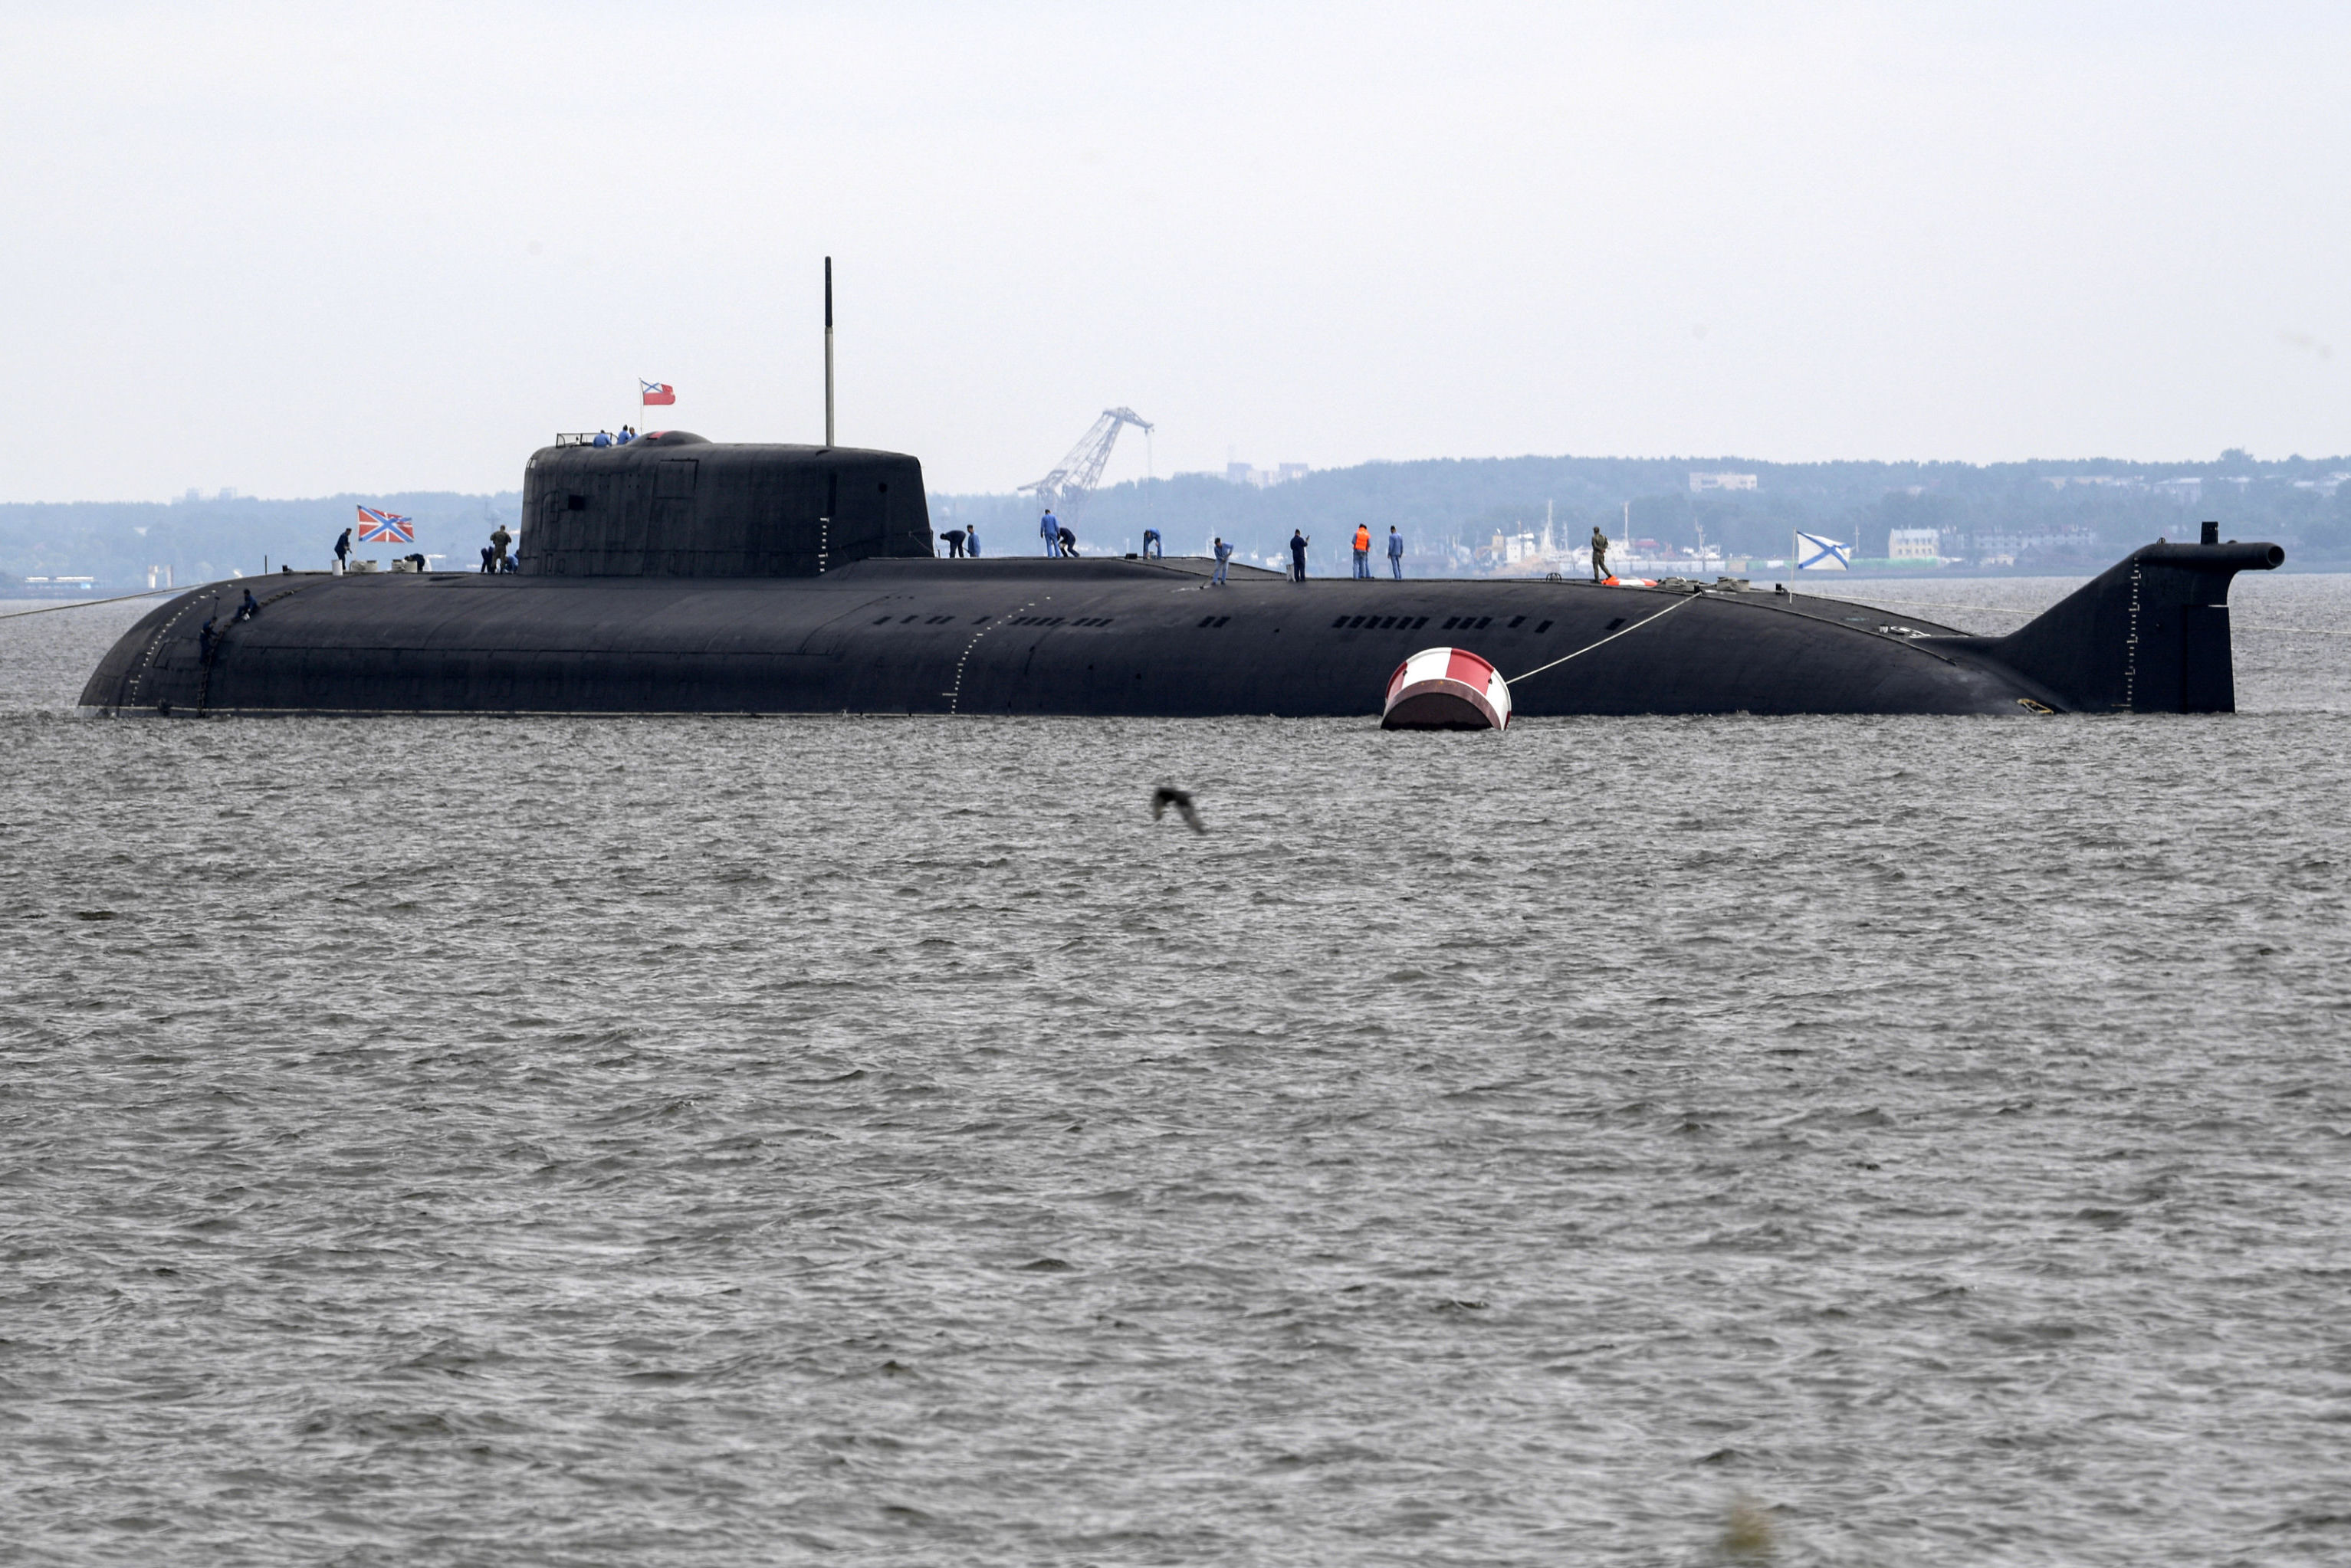 Новости подводного флота. Подводные лодки проекта 949а «Антей». Атомная подводная лодка Орел. Атомная подводная лодка к-266 «Орел». АПЛ "Орел" проекта 949а "Антей".